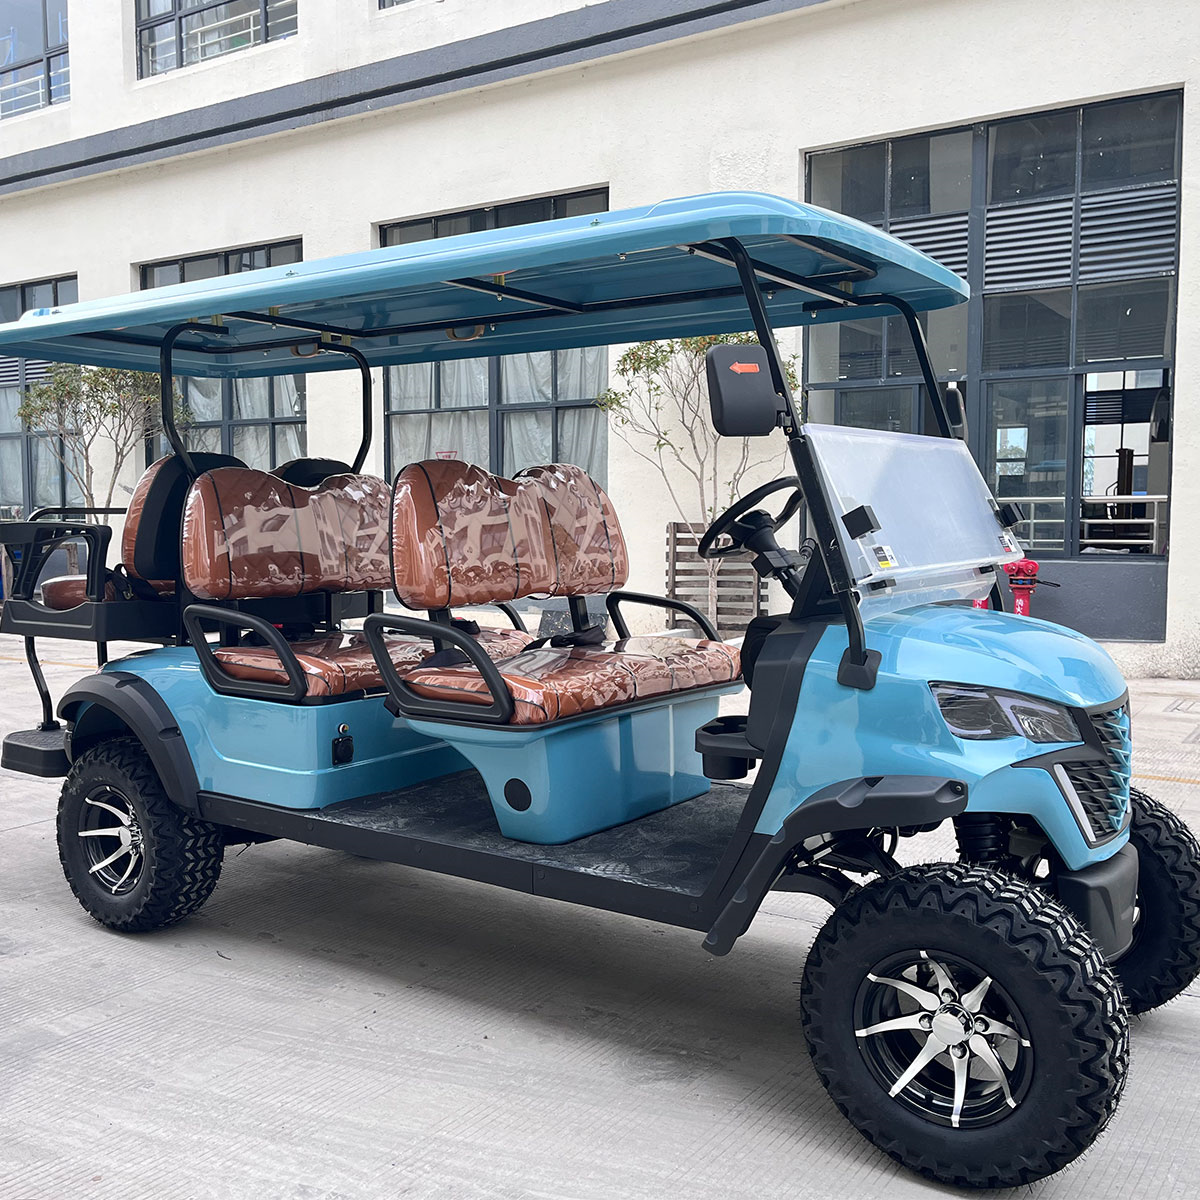 4+2 seater golf cart